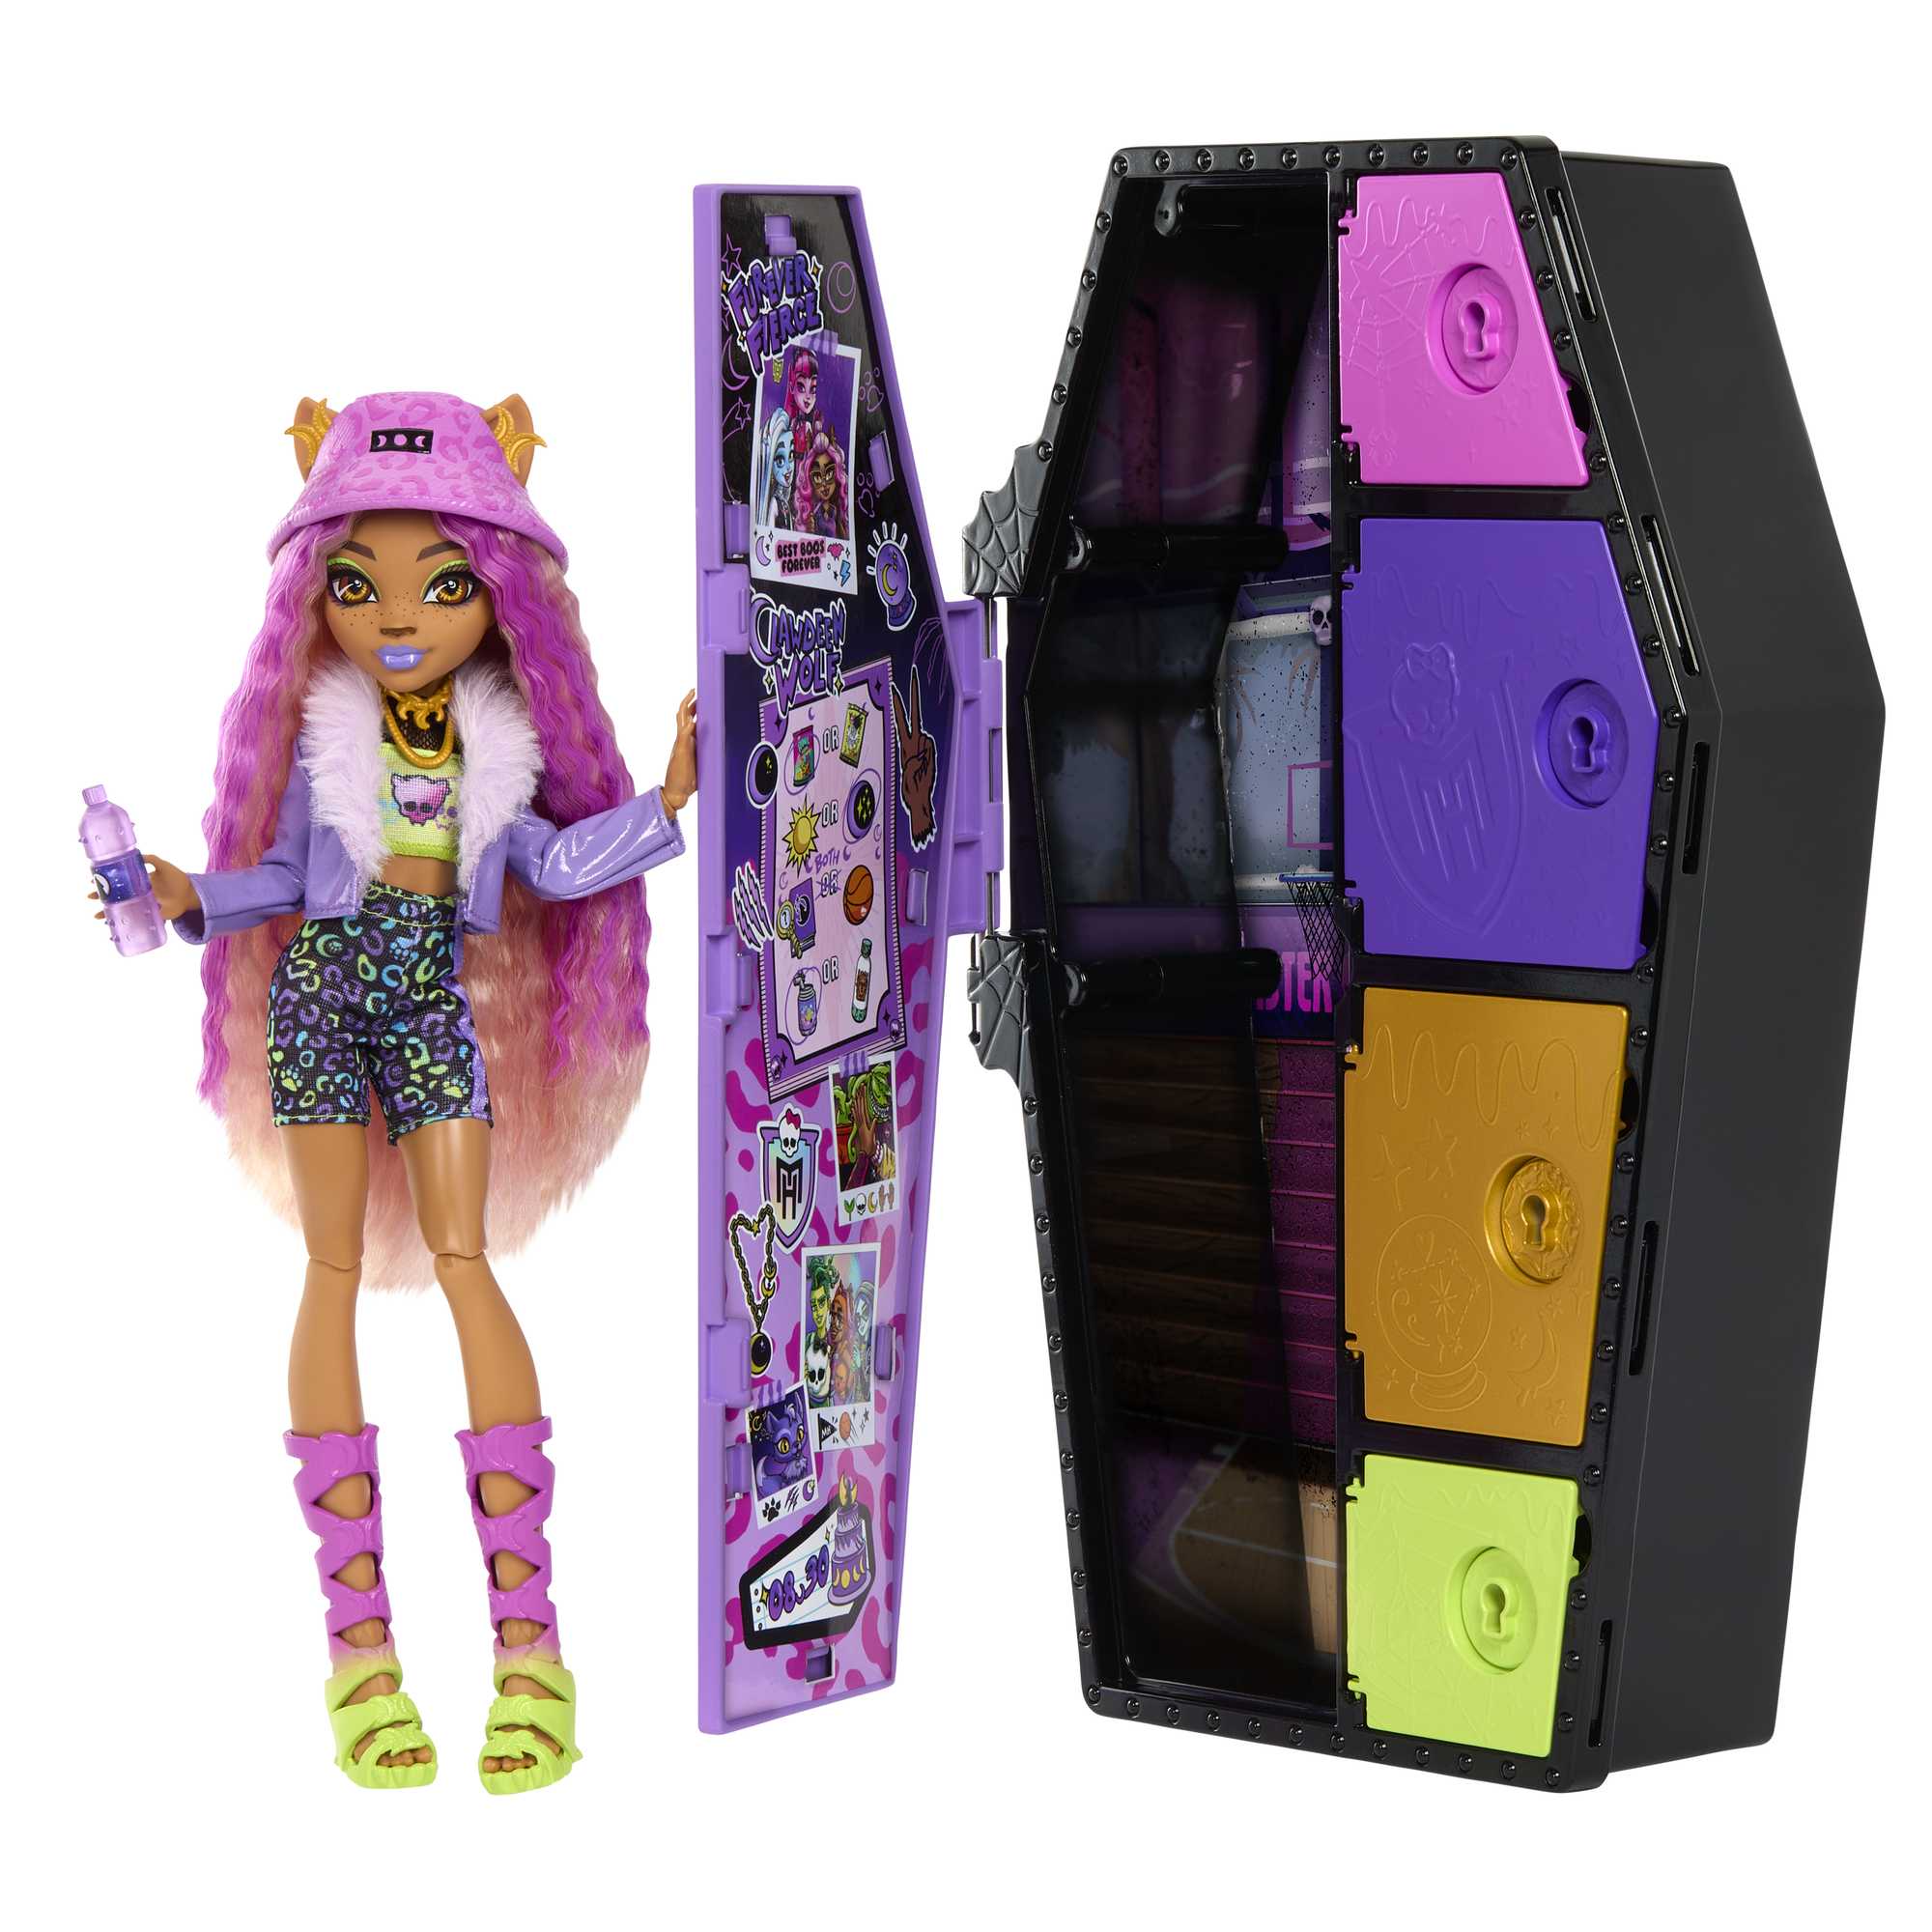 Mattel Monster High Clawdeen Doll - Free Shipping